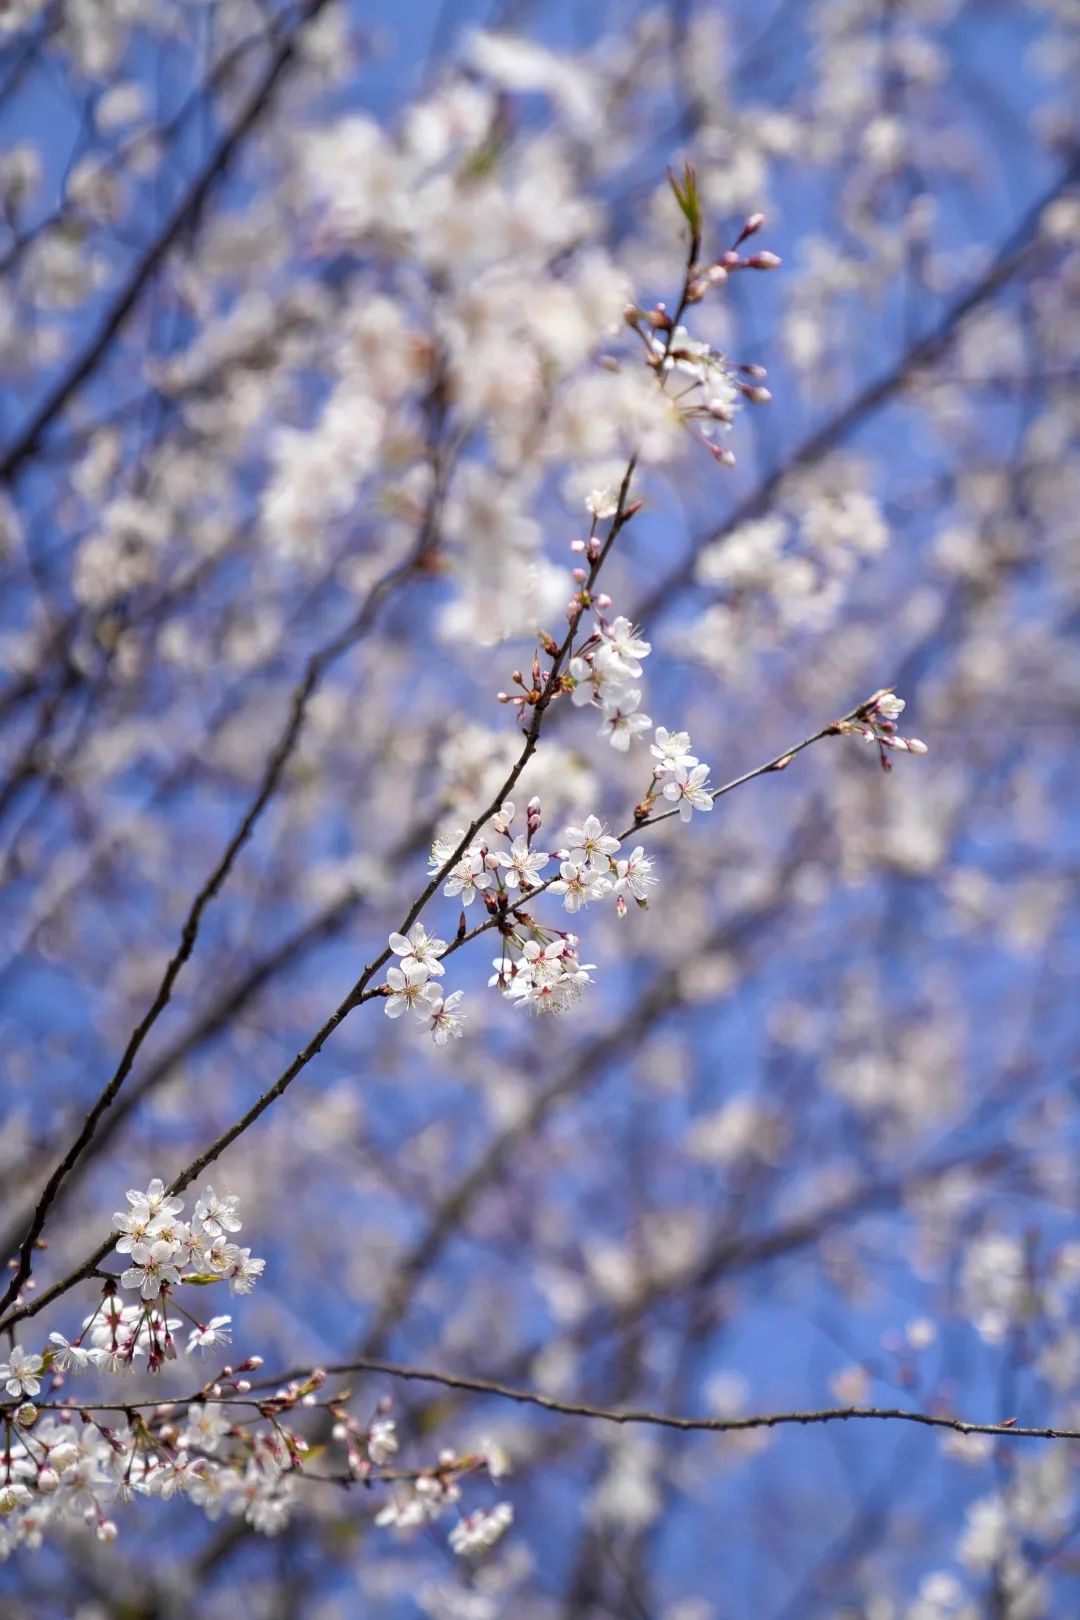 雪白的樱花在蓝天的衬托下分外美丽。罗嘉 摄